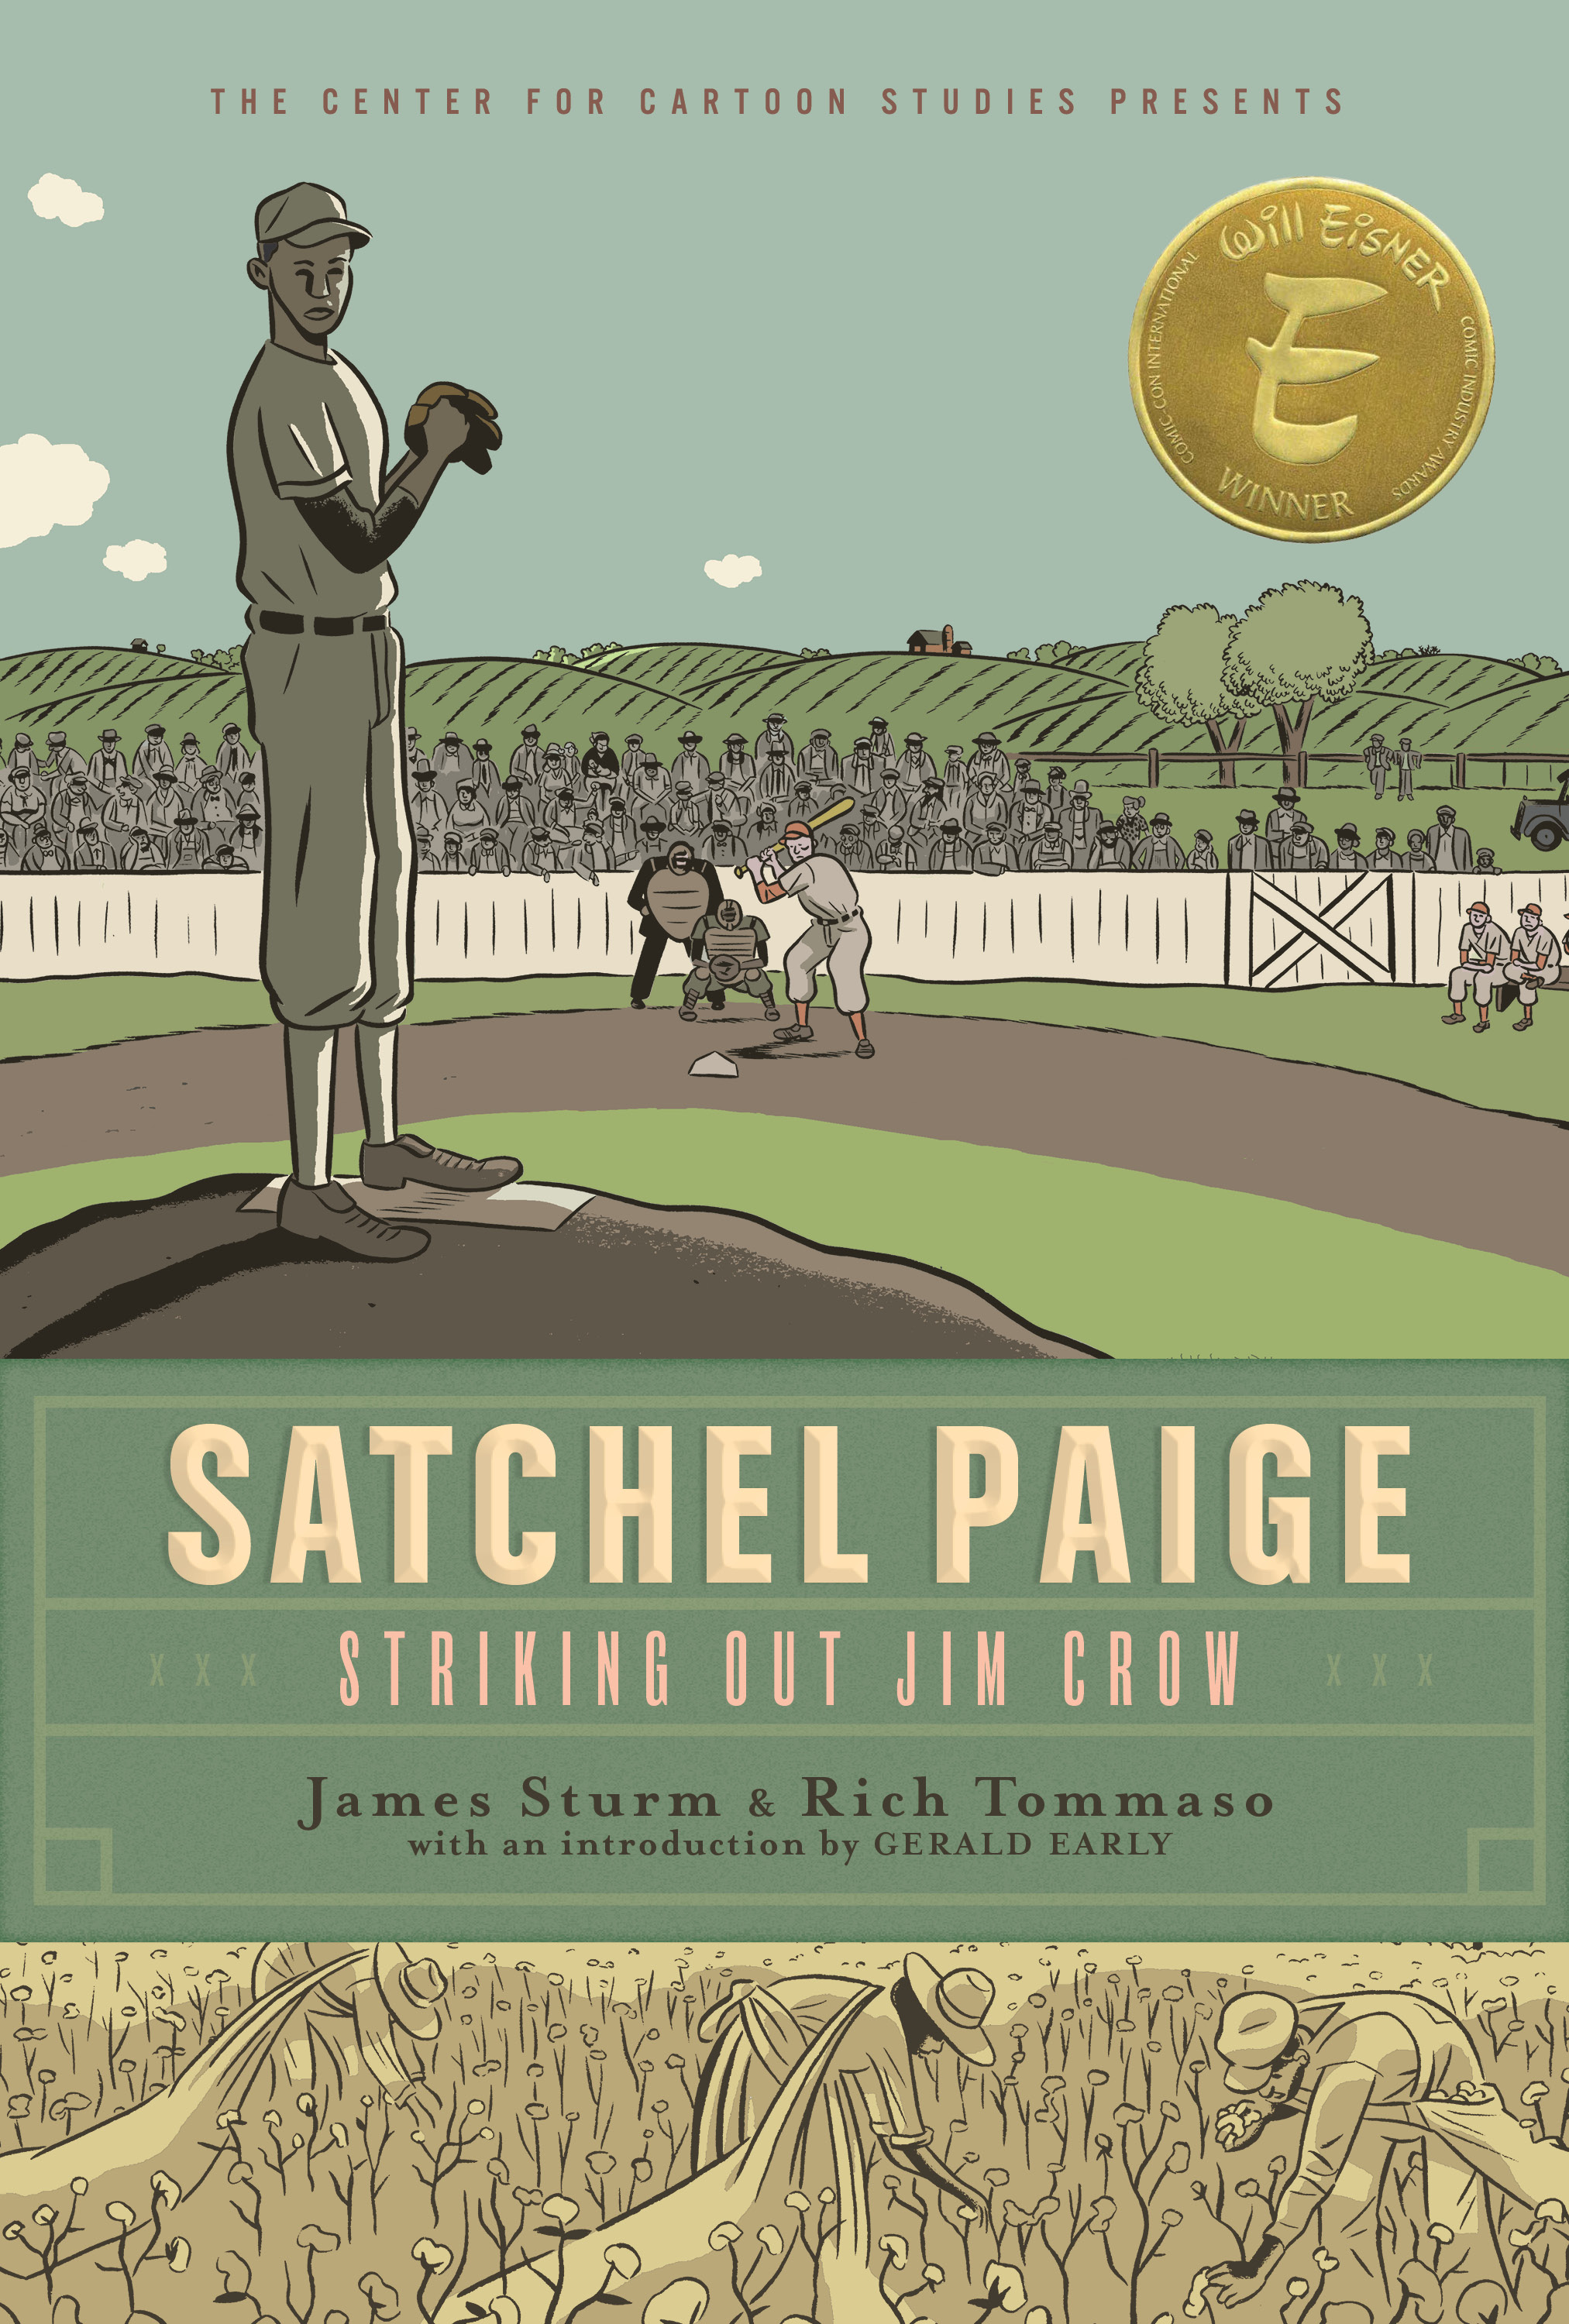 Satchel Paige by James Sturm